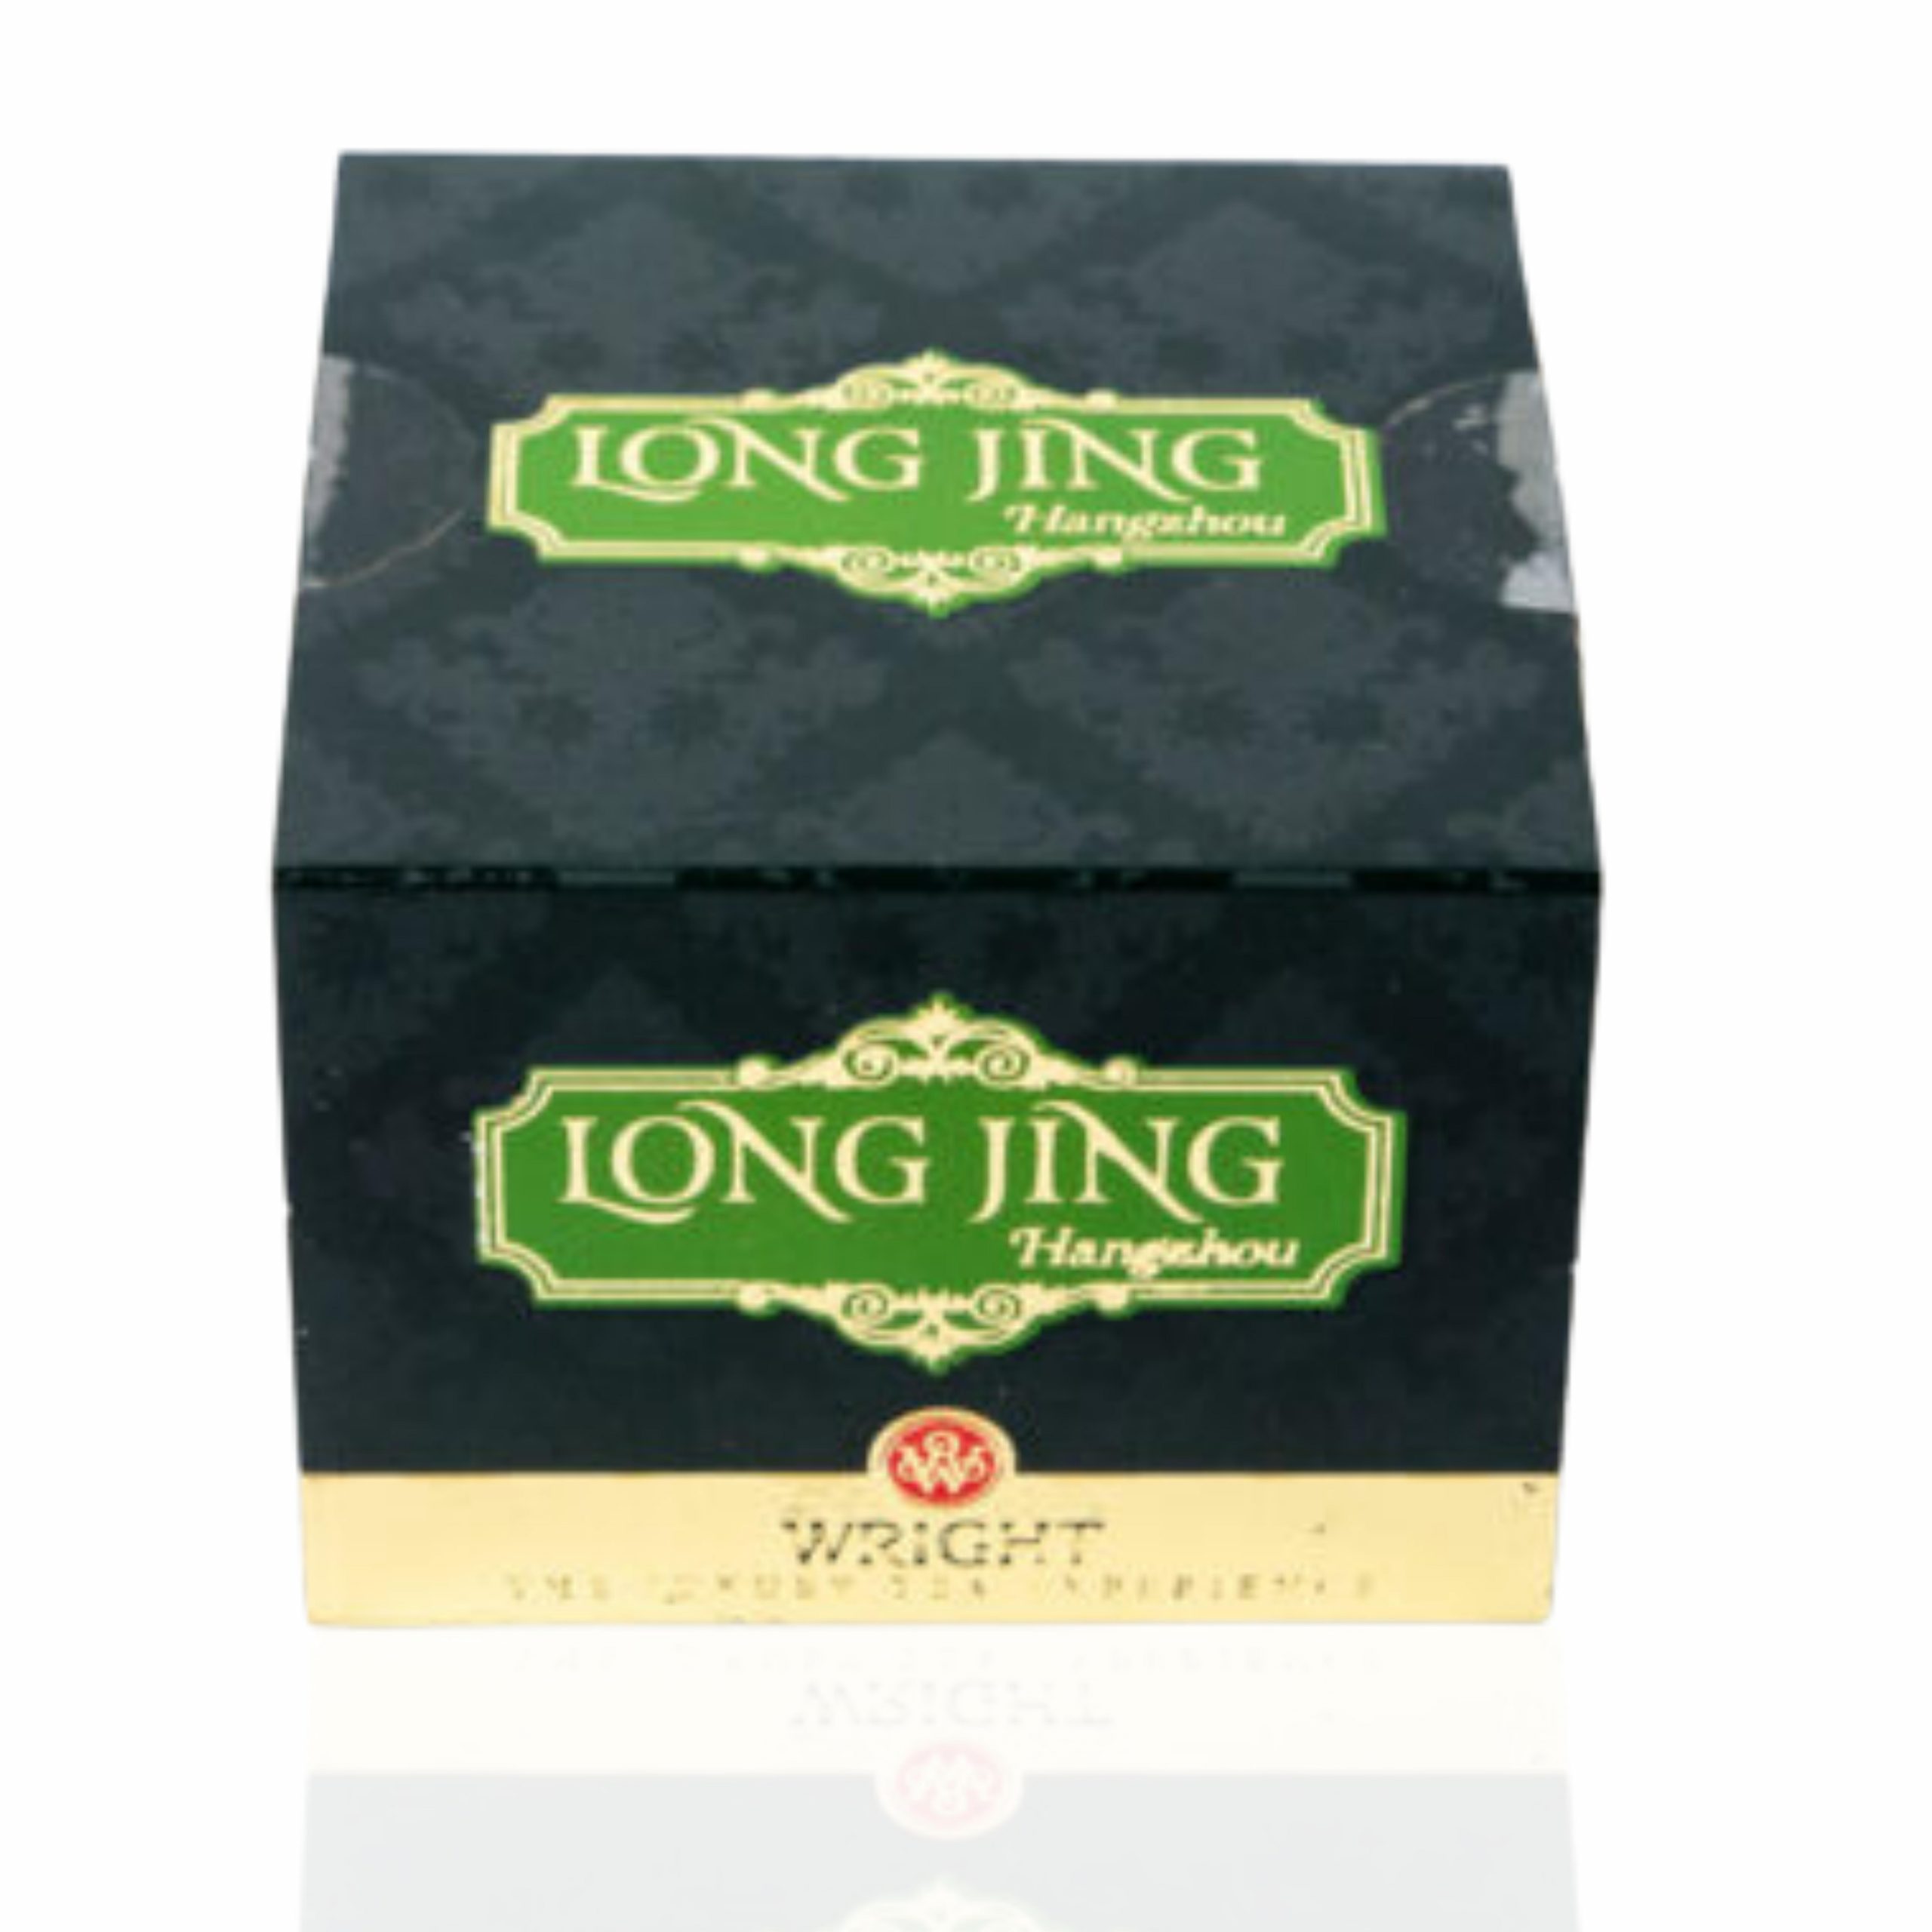 Long Jing Hangzhou